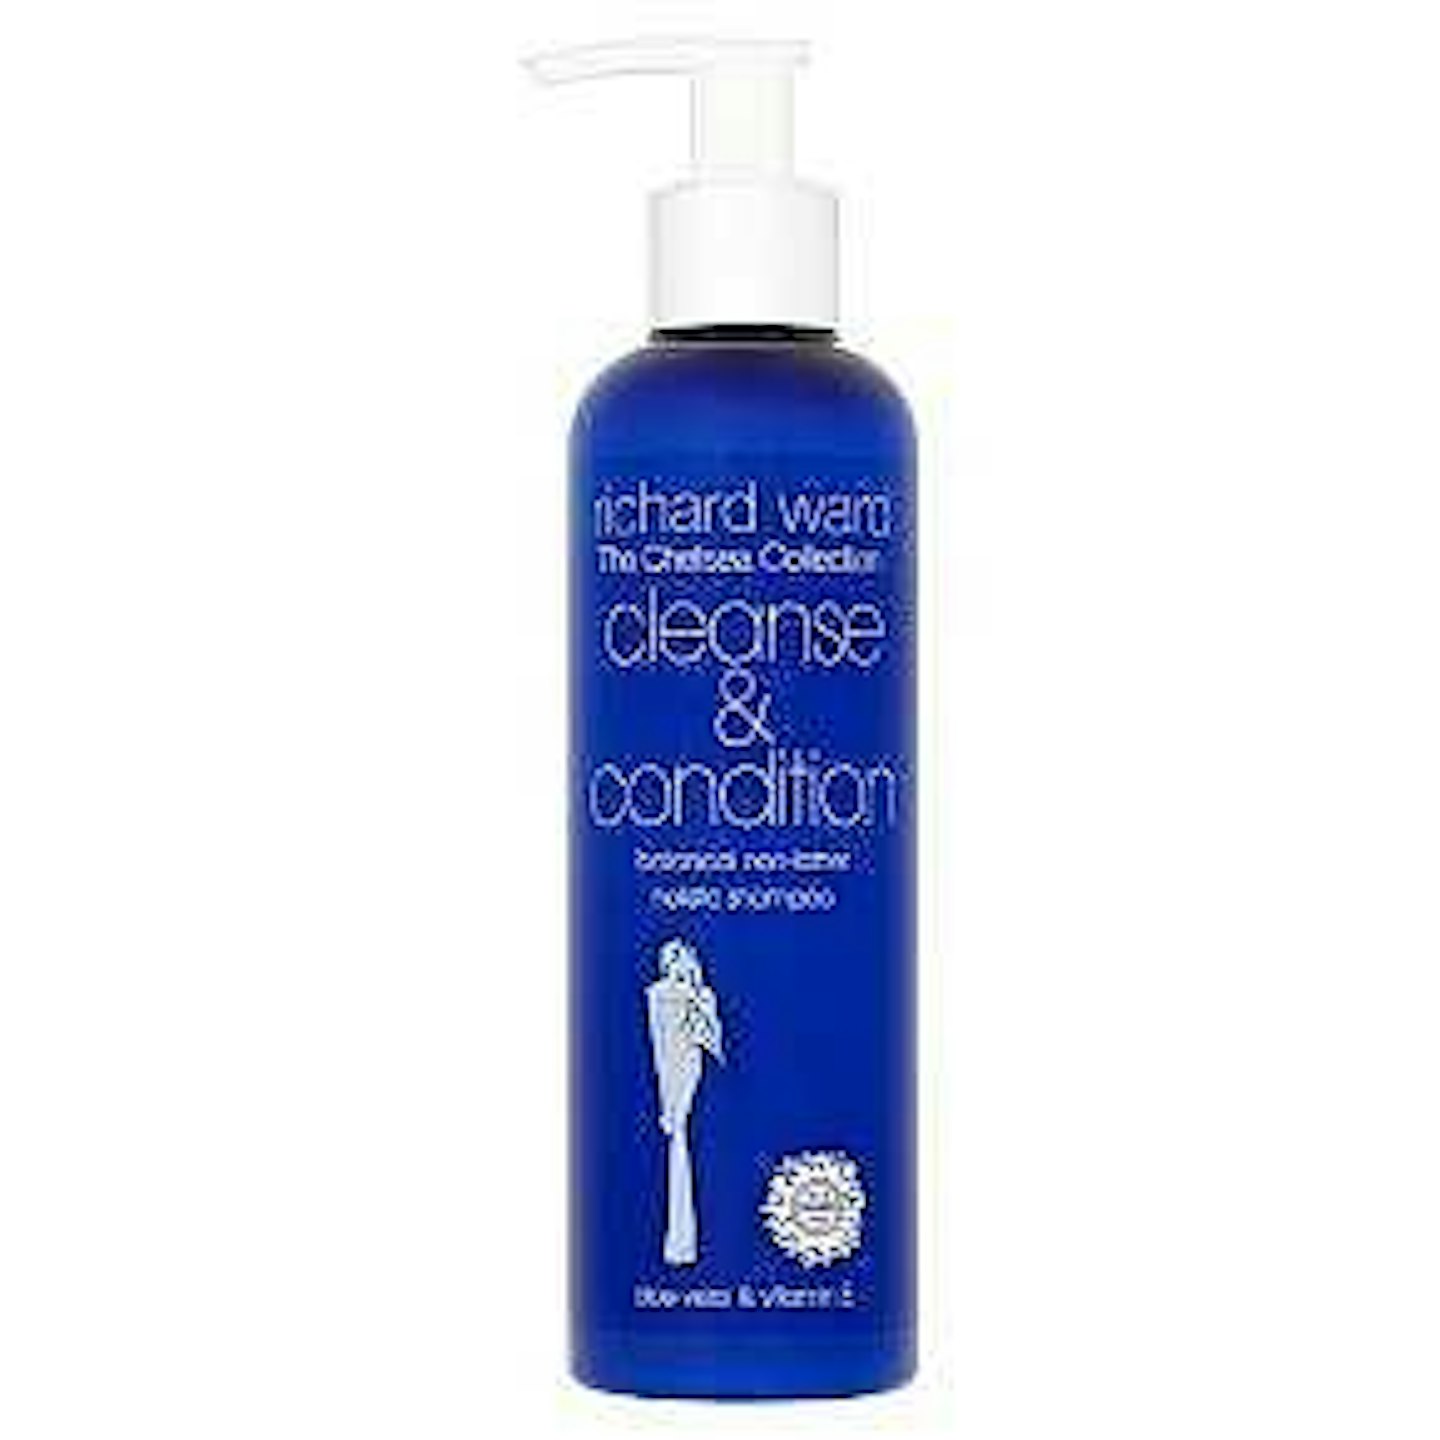 richard-ward-shampoo